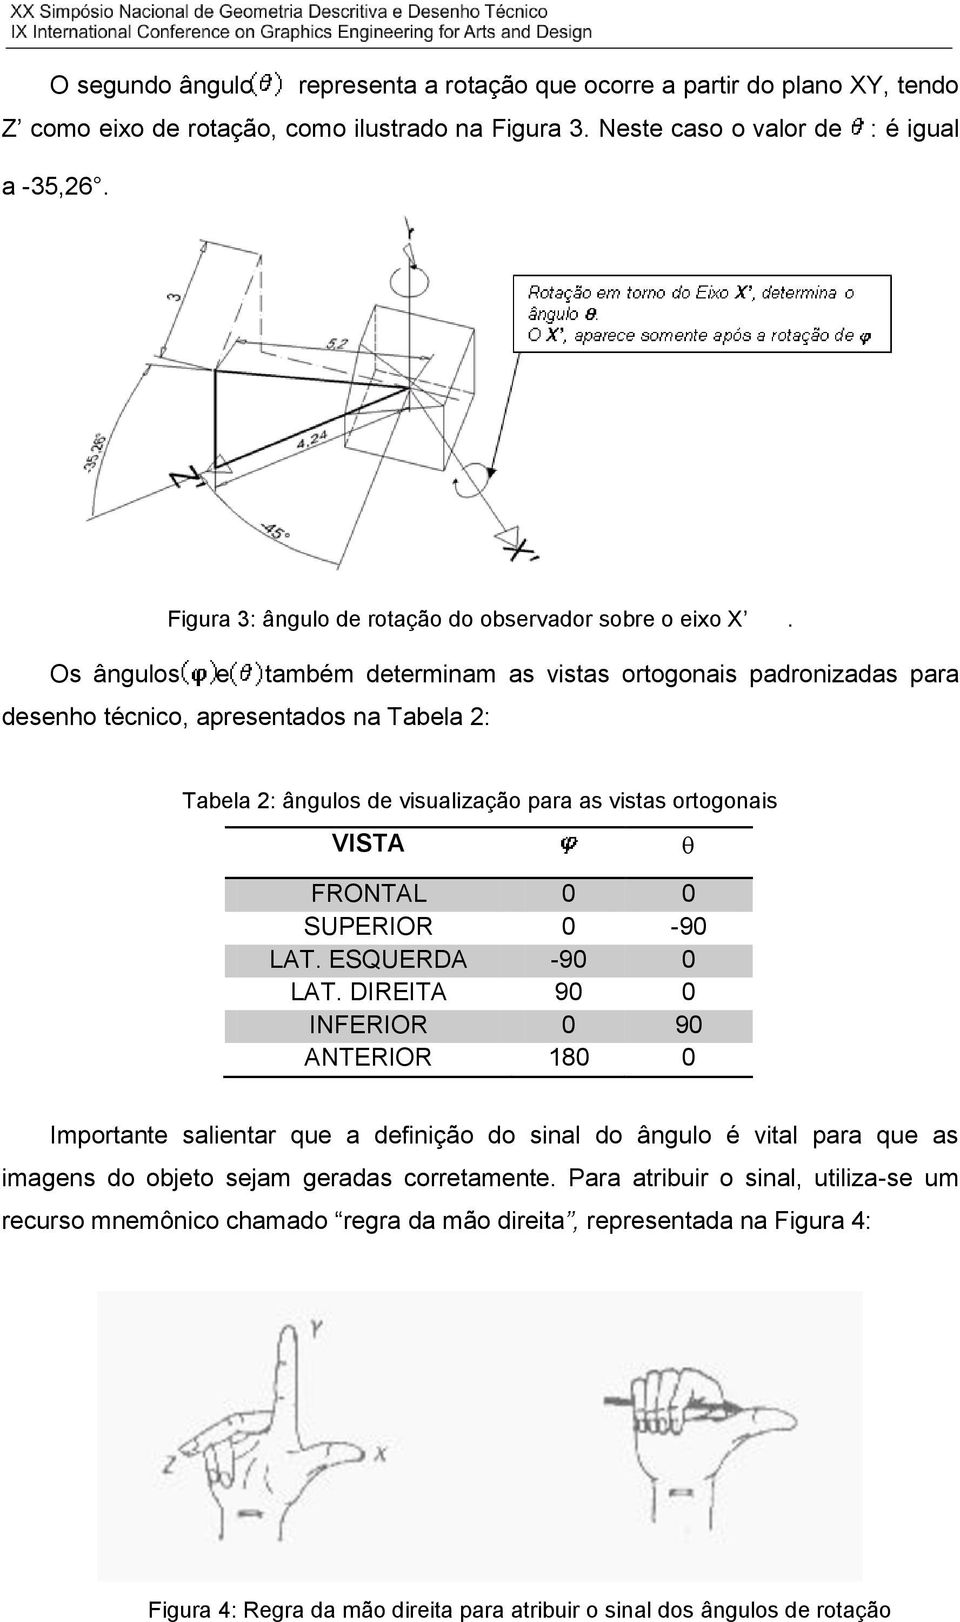 Os ângulos e também determinam as vistas ortogonais padronizadas para desenho técnico, apresentados na Tabela 2: Tabela 2: ângulos de visualização para as vistas ortogonais VISTA FRONTAL 0 0 SUPERIOR